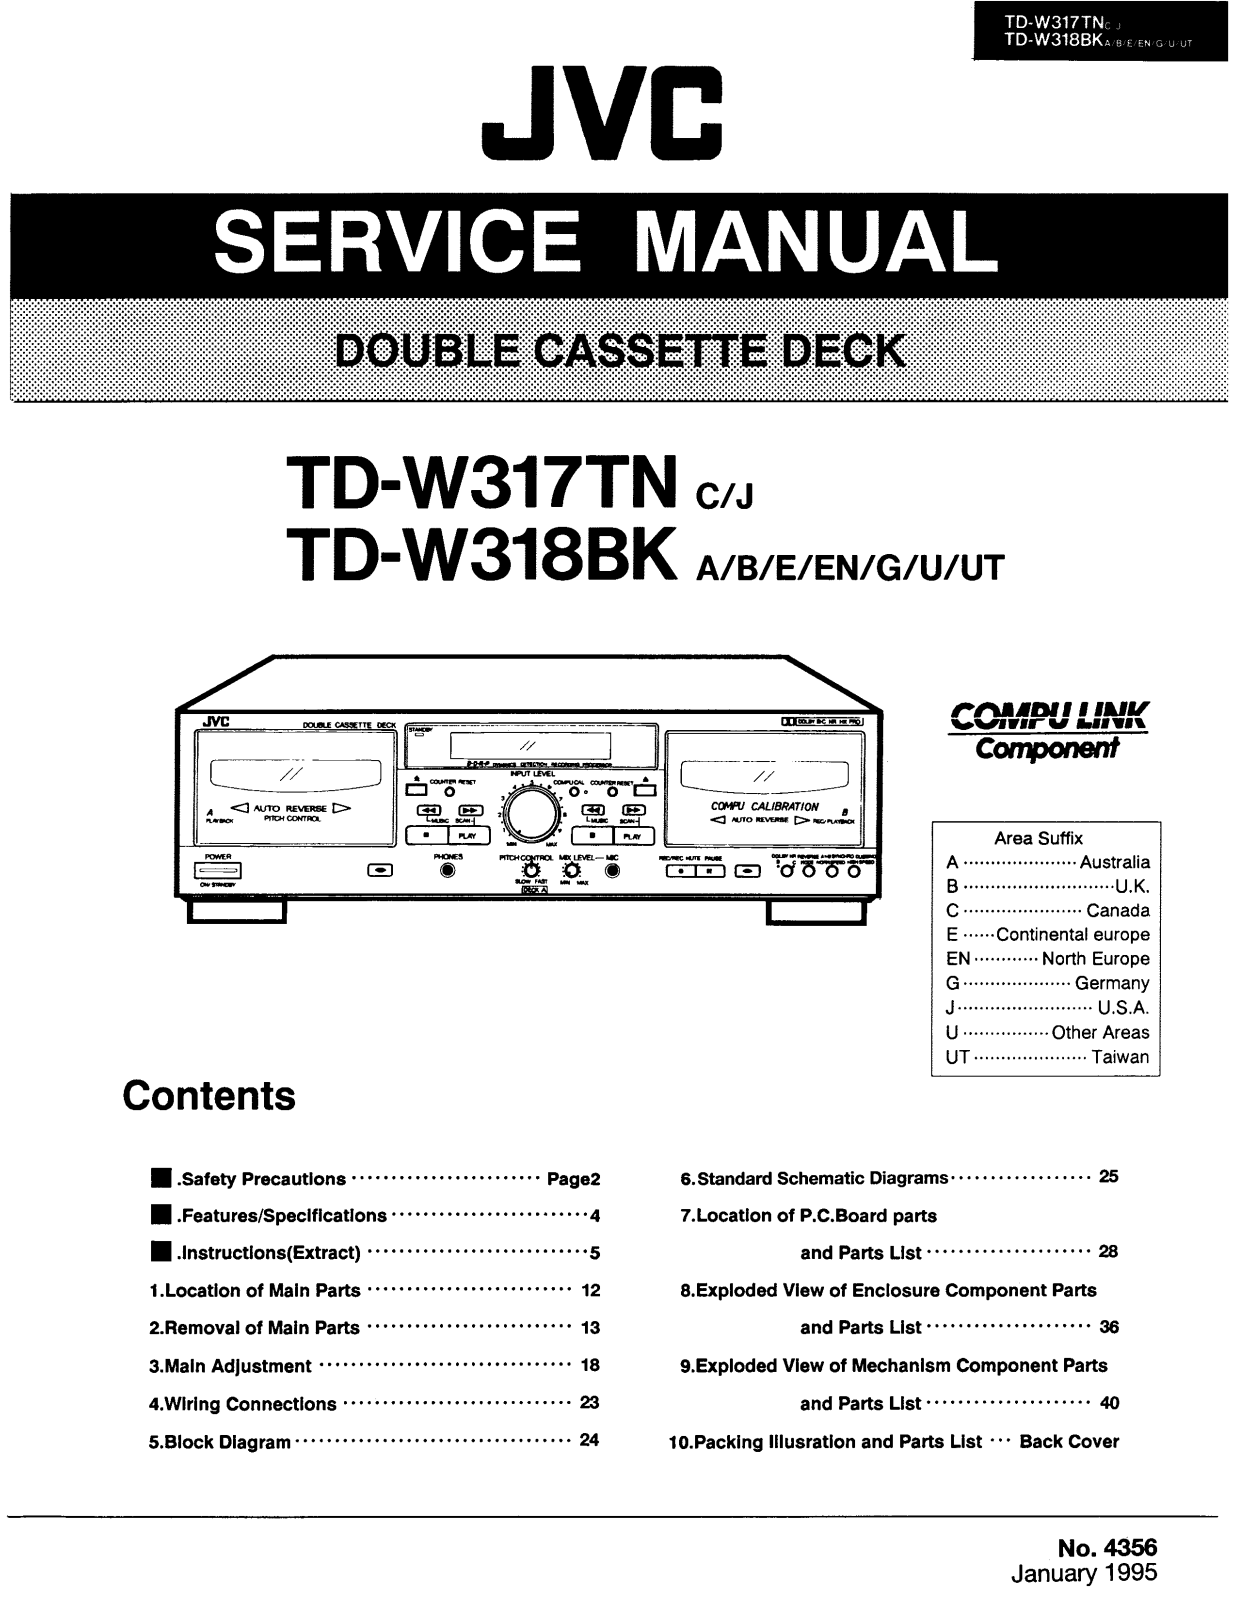 Jvc TD-W318-BK, TD-W317-TN Service Manual